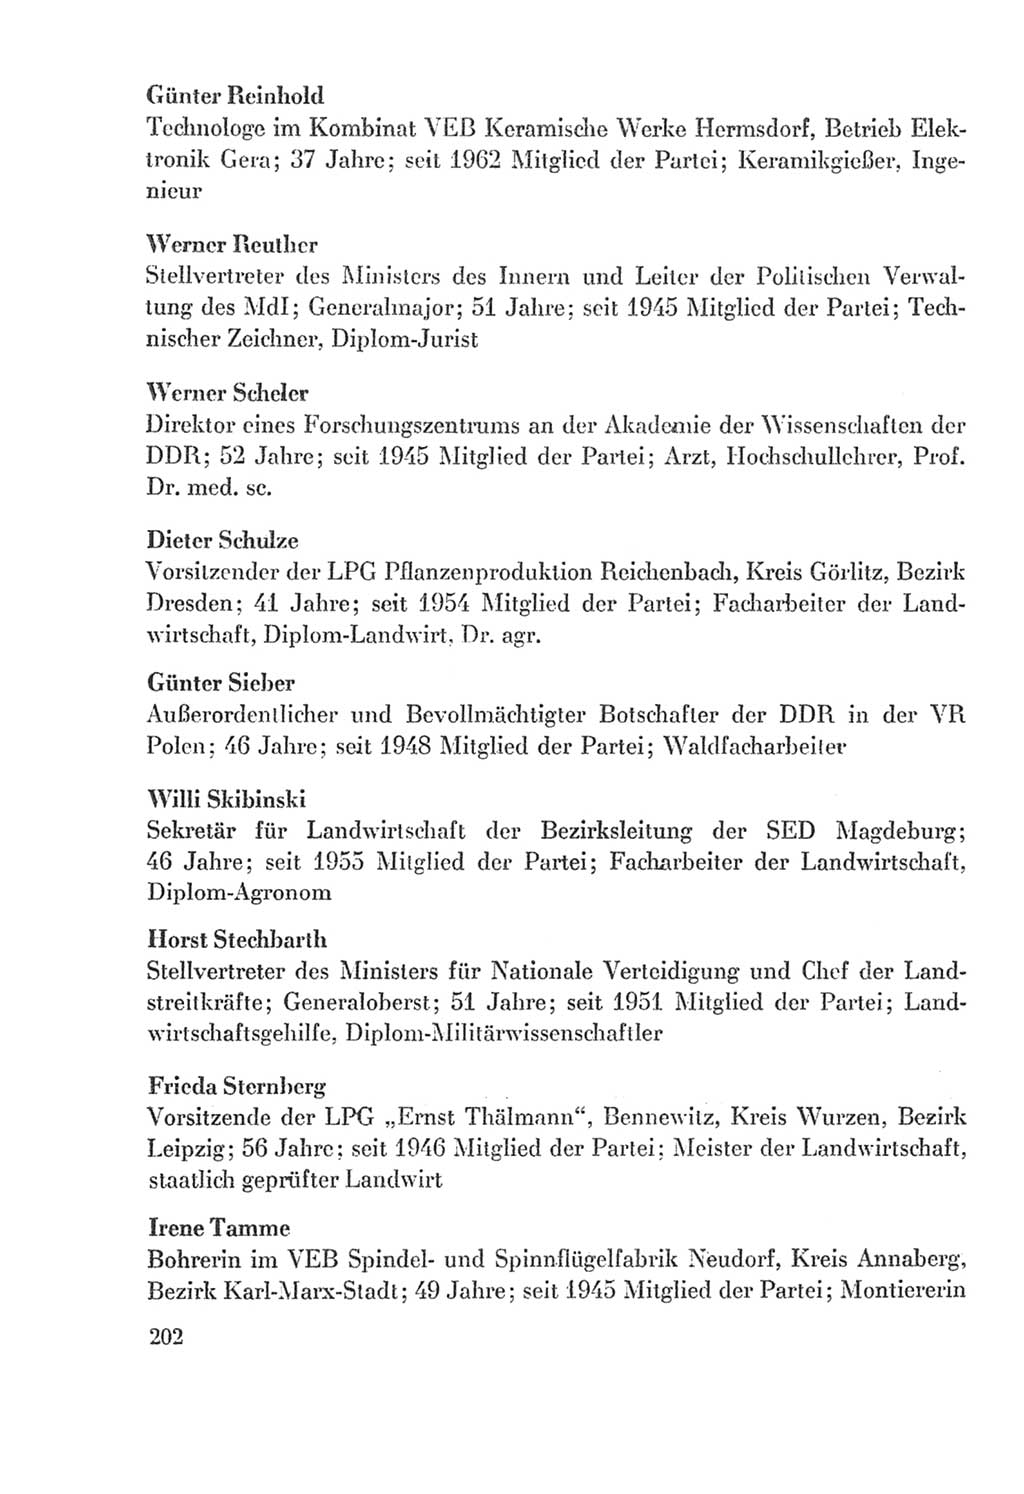 Protokoll der Verhandlungen des Ⅸ. Parteitages der Sozialistischen Einheitspartei Deutschlands (SED) [Deutsche Demokratische Republik (DDR)] 1976, Band 2, Seite 202 (Prot. Verh. Ⅸ. PT SED DDR 1976, Bd. 2, S. 202)